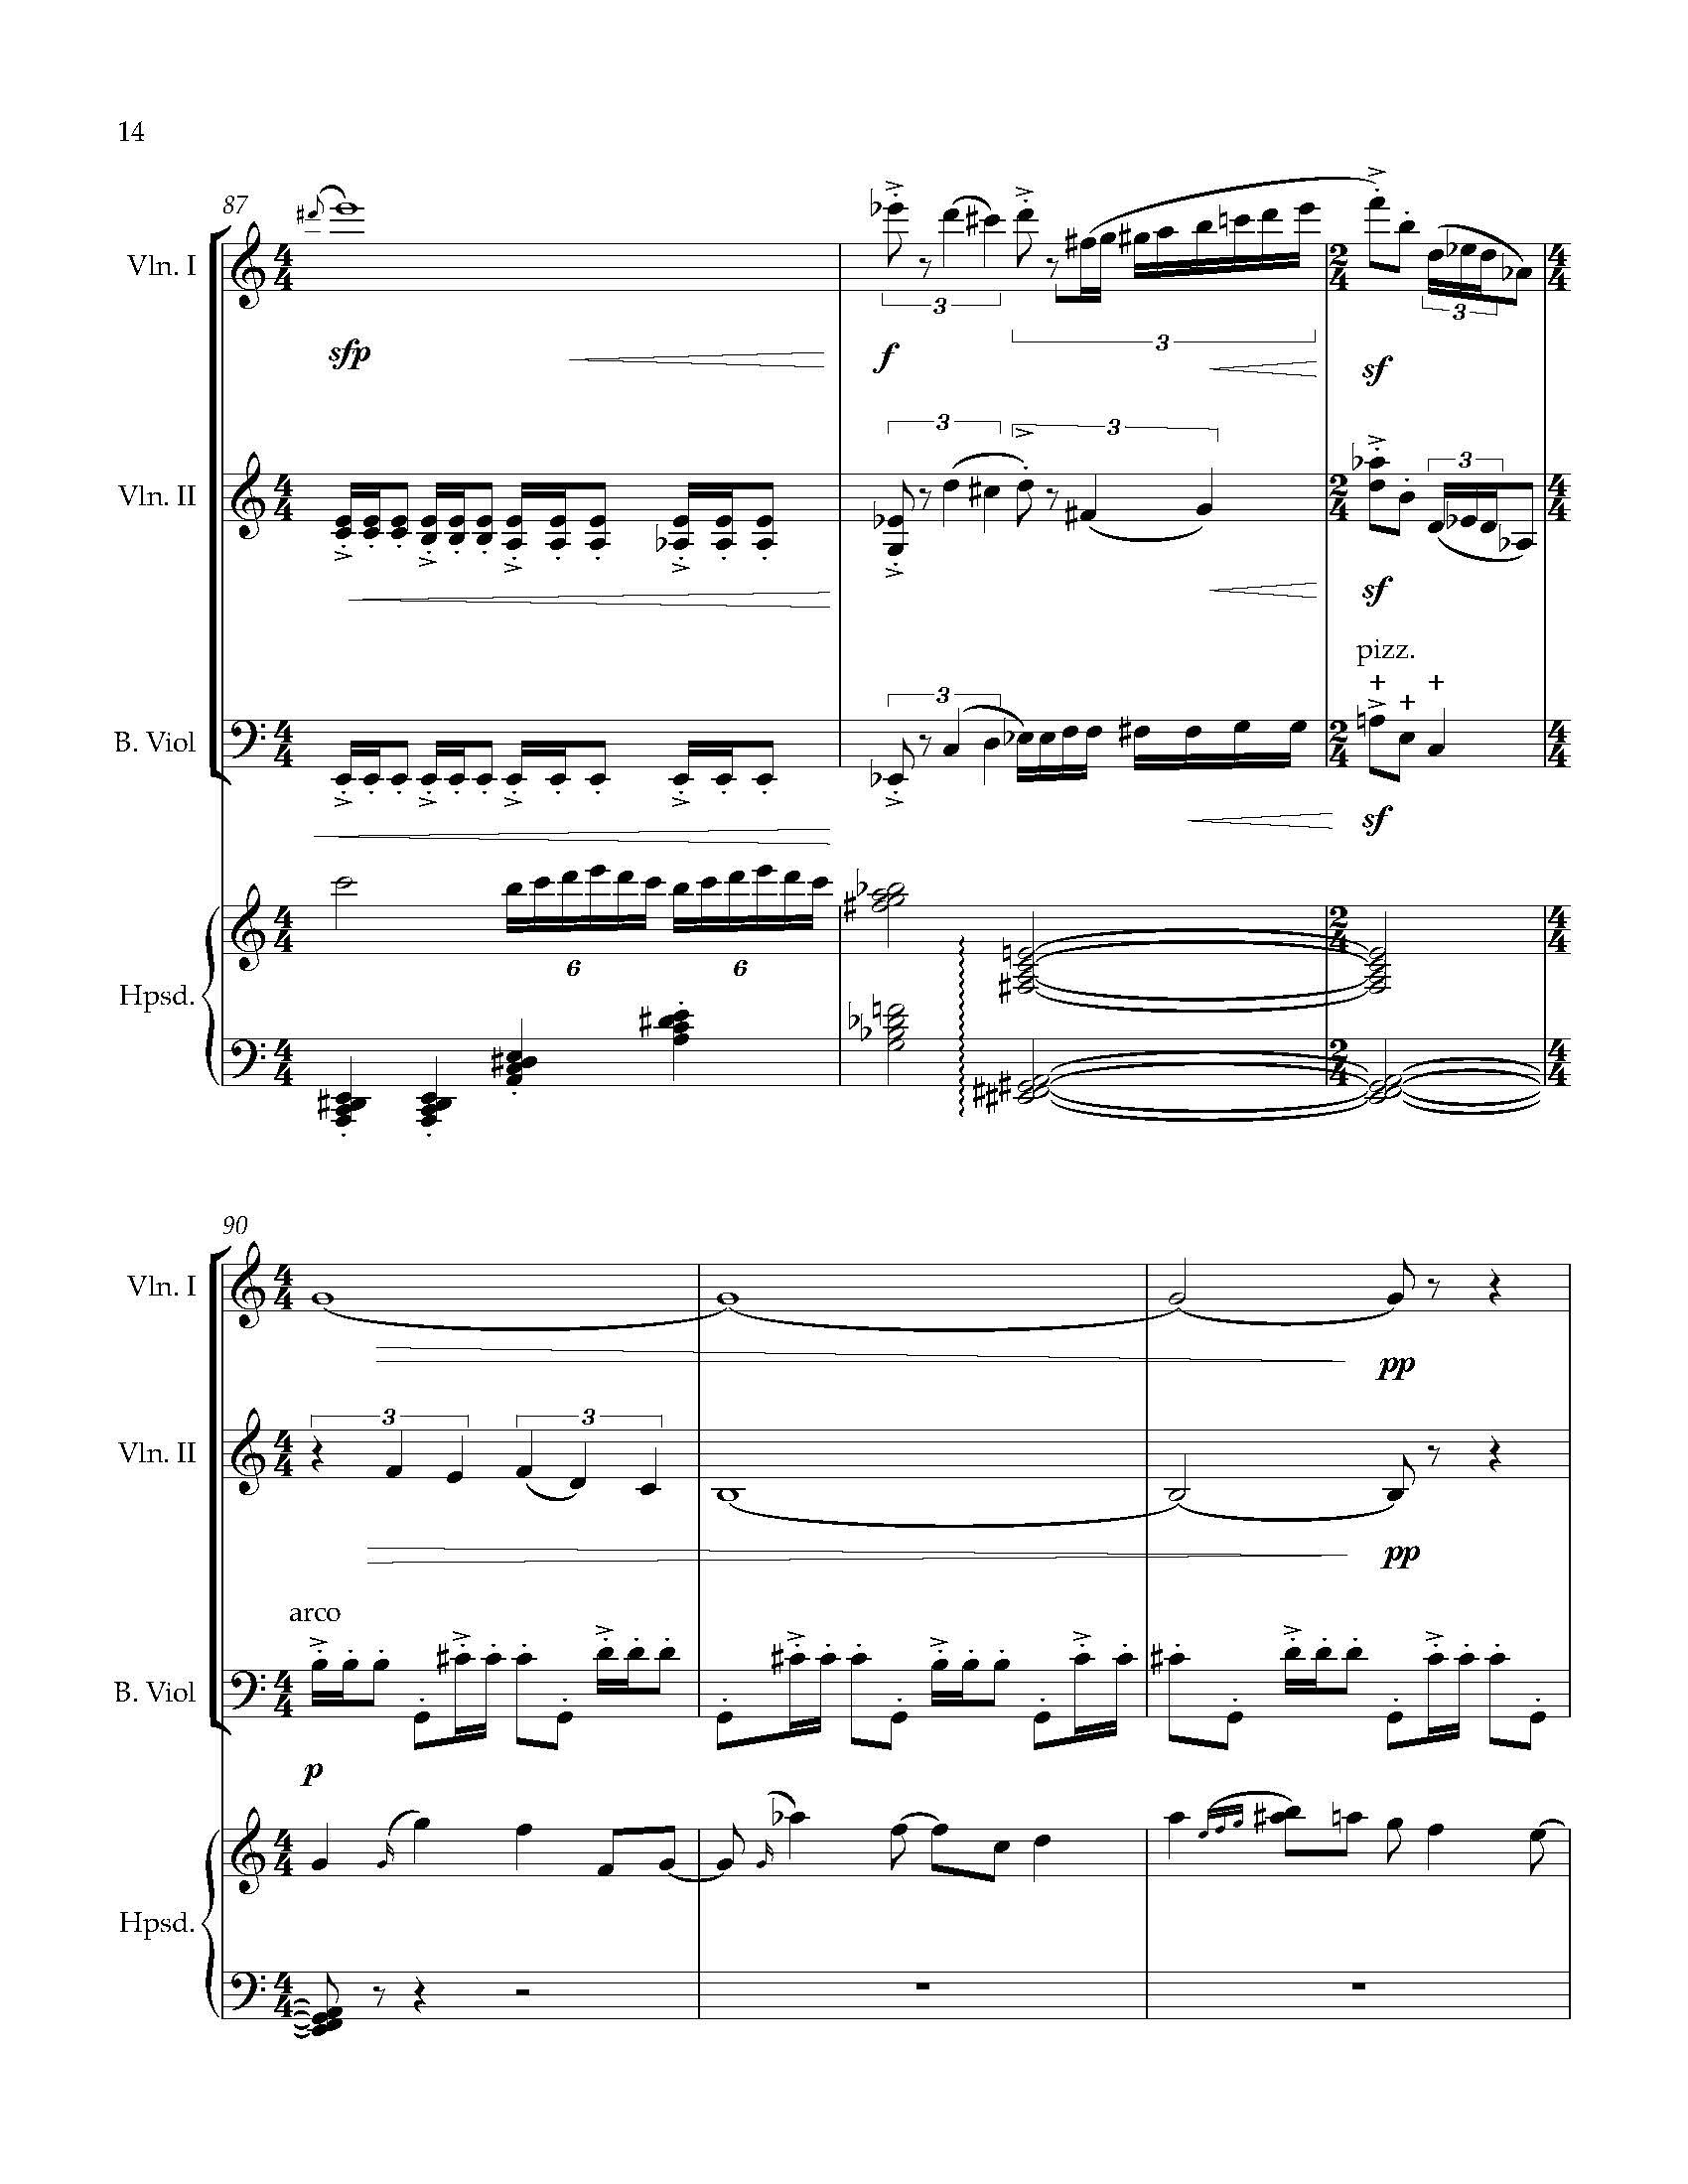 Sonata Sonare - Complete Score_Page_20.jpg